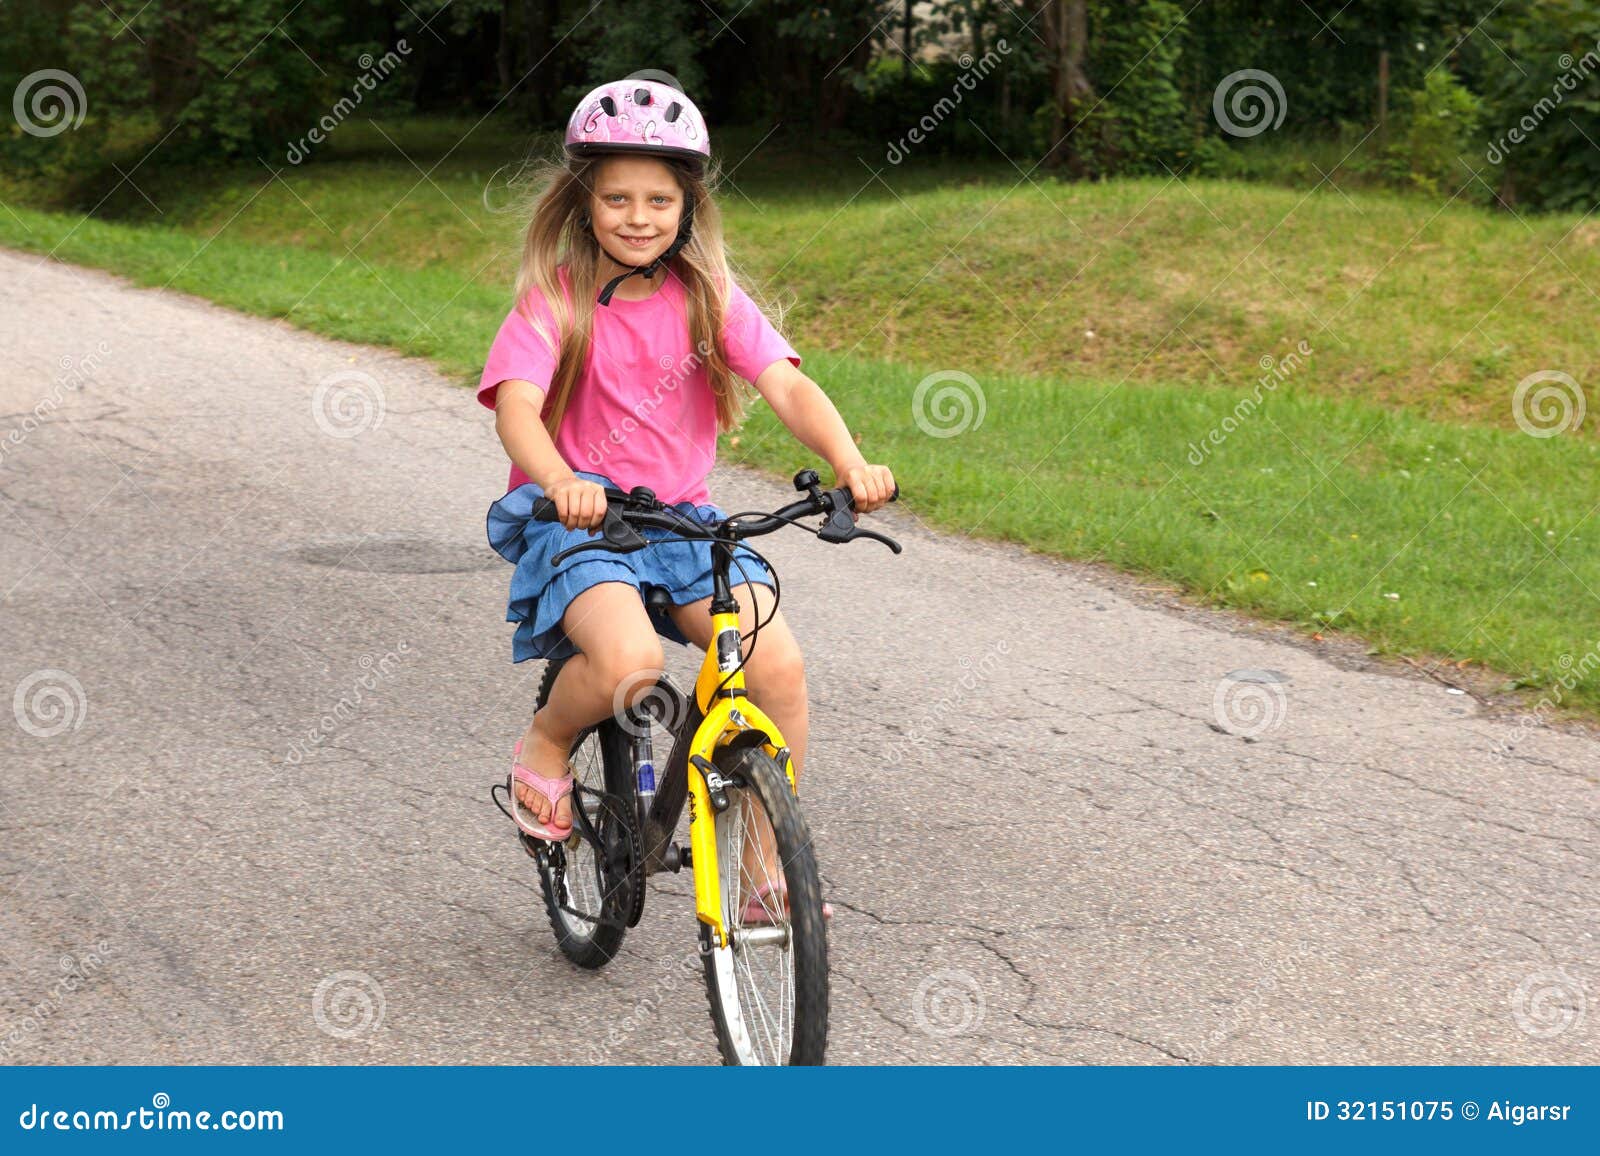 壁纸 可爱的小女孩骑自行车 1920x1440 HD 高清壁纸, 图片, 照片